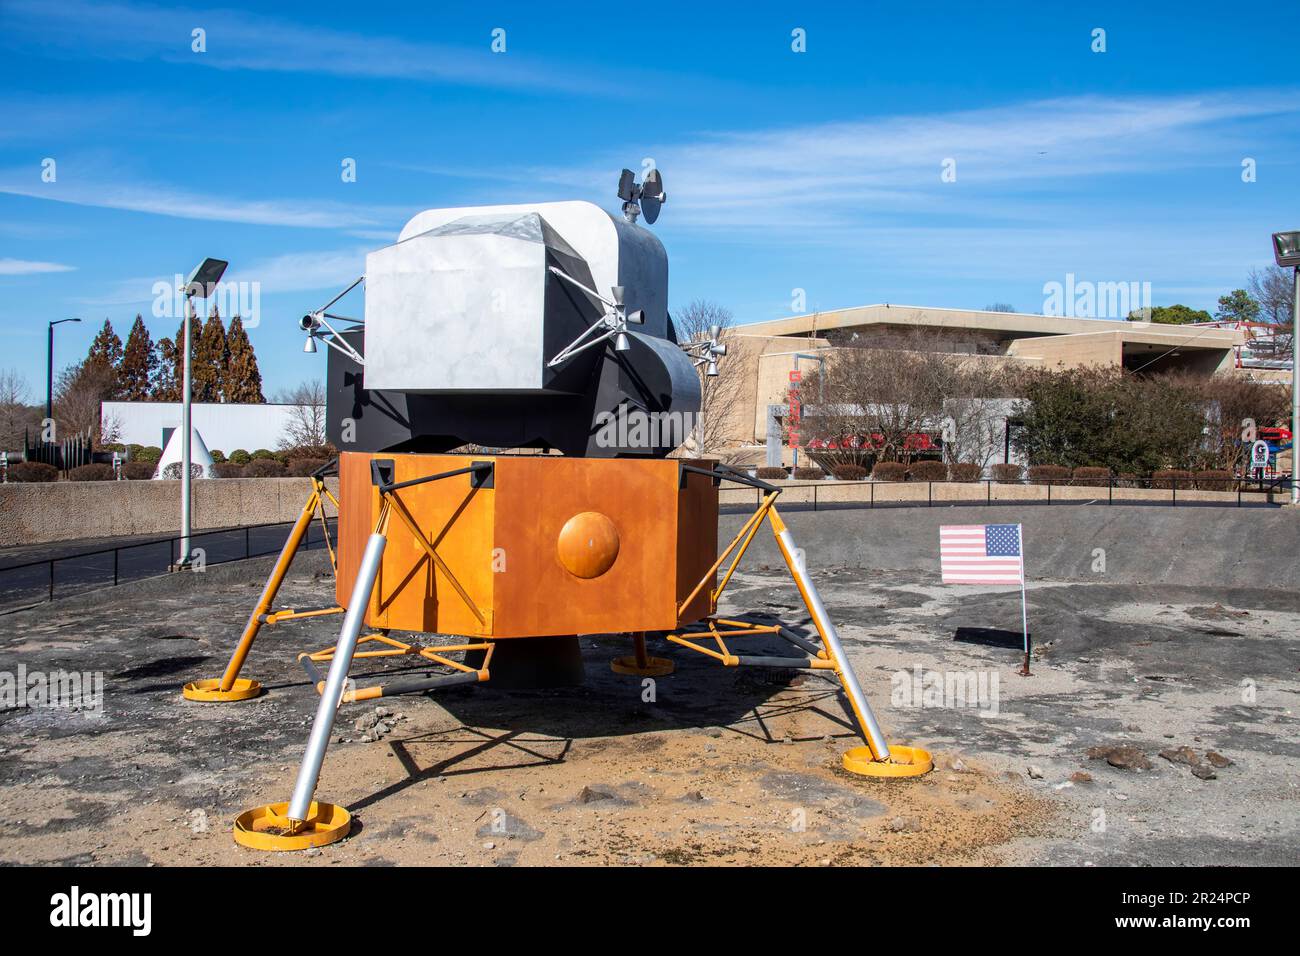 Huntsville USA 10. Februar 2023: Das Apollo Lunar Excursion Module (LEM) mit US-Flagge in den USA Weltraum-Raketenzentrum. Wurde wie ein Campingzelt benutzt Stockfoto